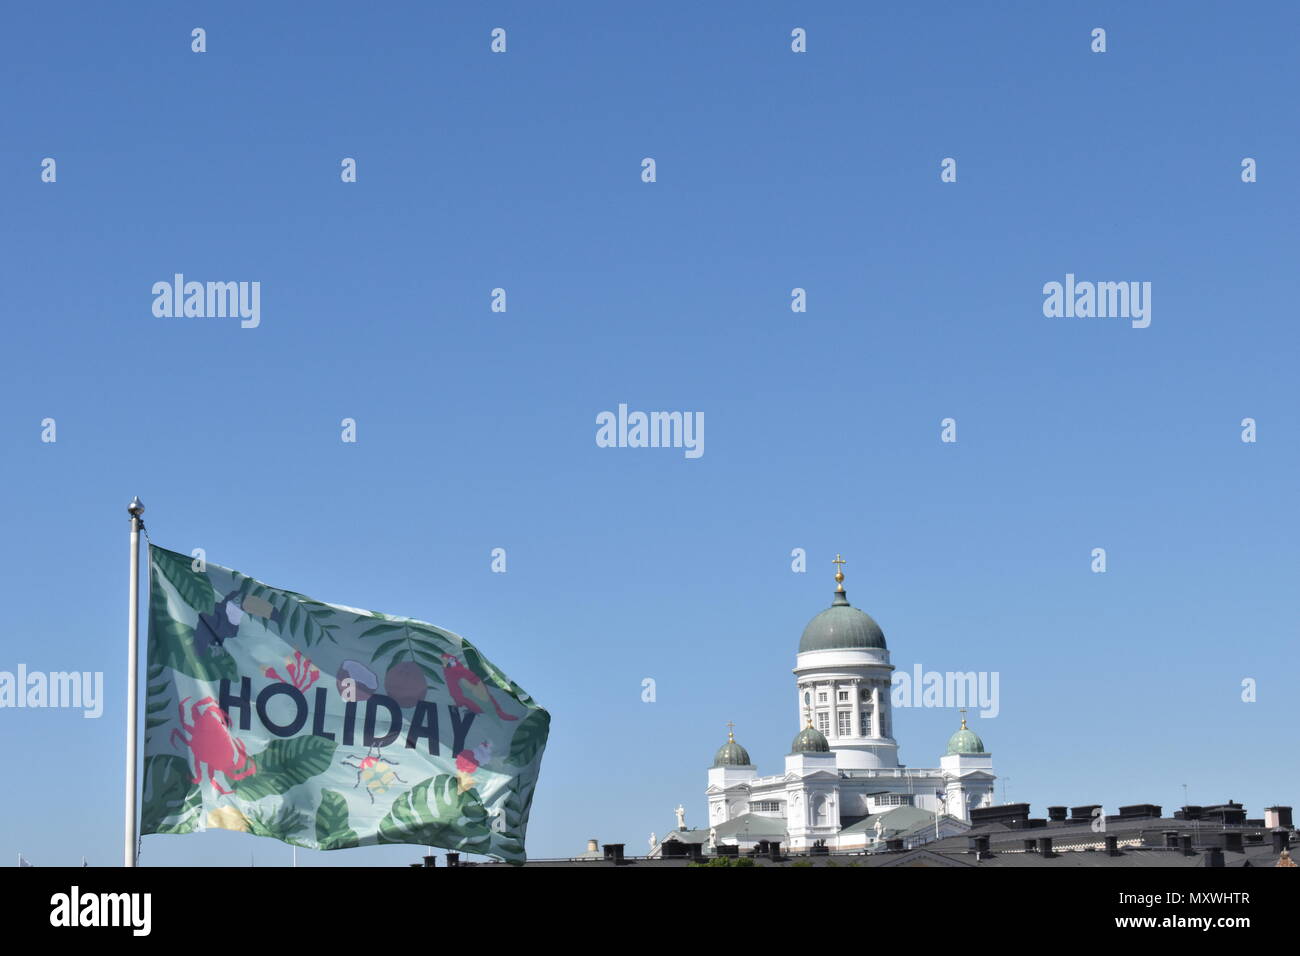 Urlaub Flagge weht im Wind. Kathedrale von Helsinki im Hintergrund. Helsinki, Finnland, 28. Mai 2018 Stockfoto